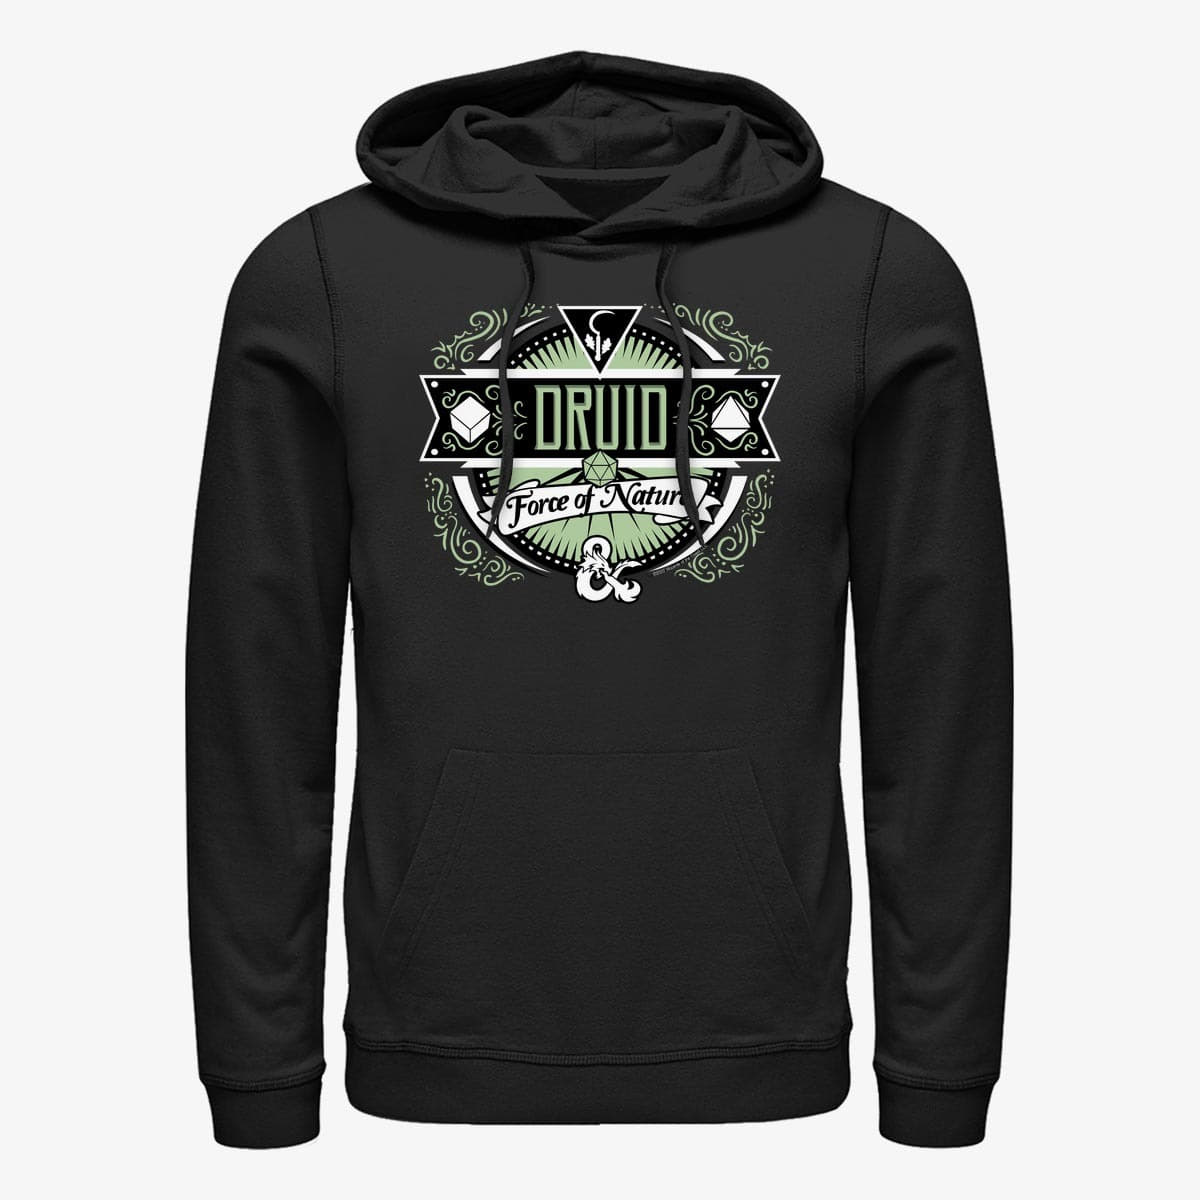 Hoodies and sweatshirts Merch Dungeons & Dragons - Druid Label Unisex Hoodie Black